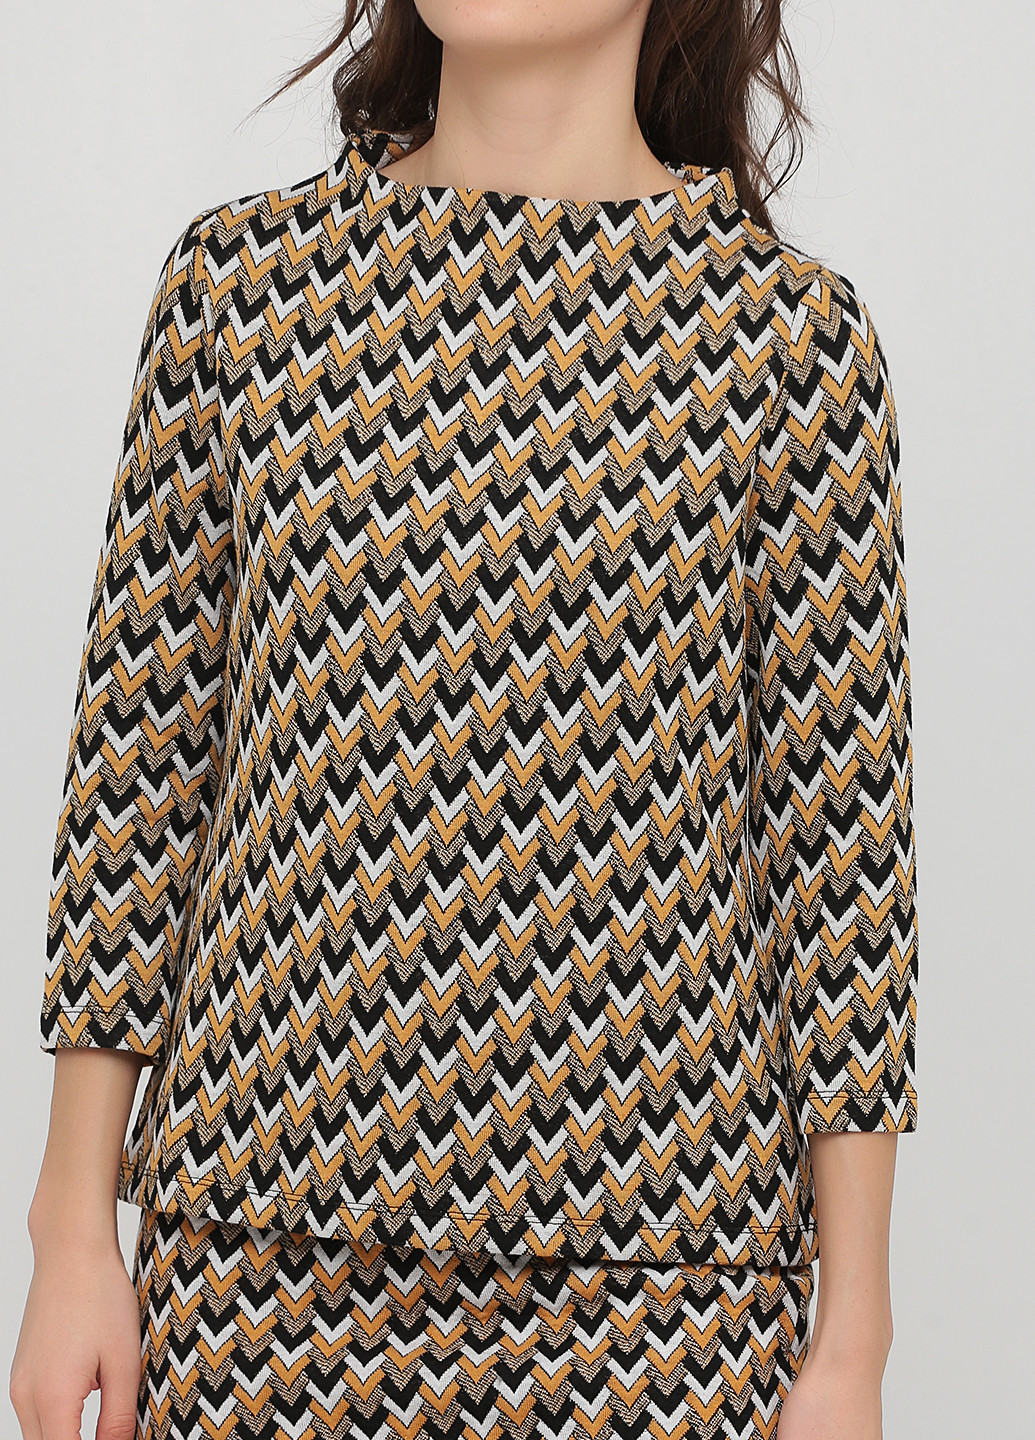 Костюм (джемпер, юбка) Madeleine юбочный геометрический коричневый кэжуал трикотаж, вискоза